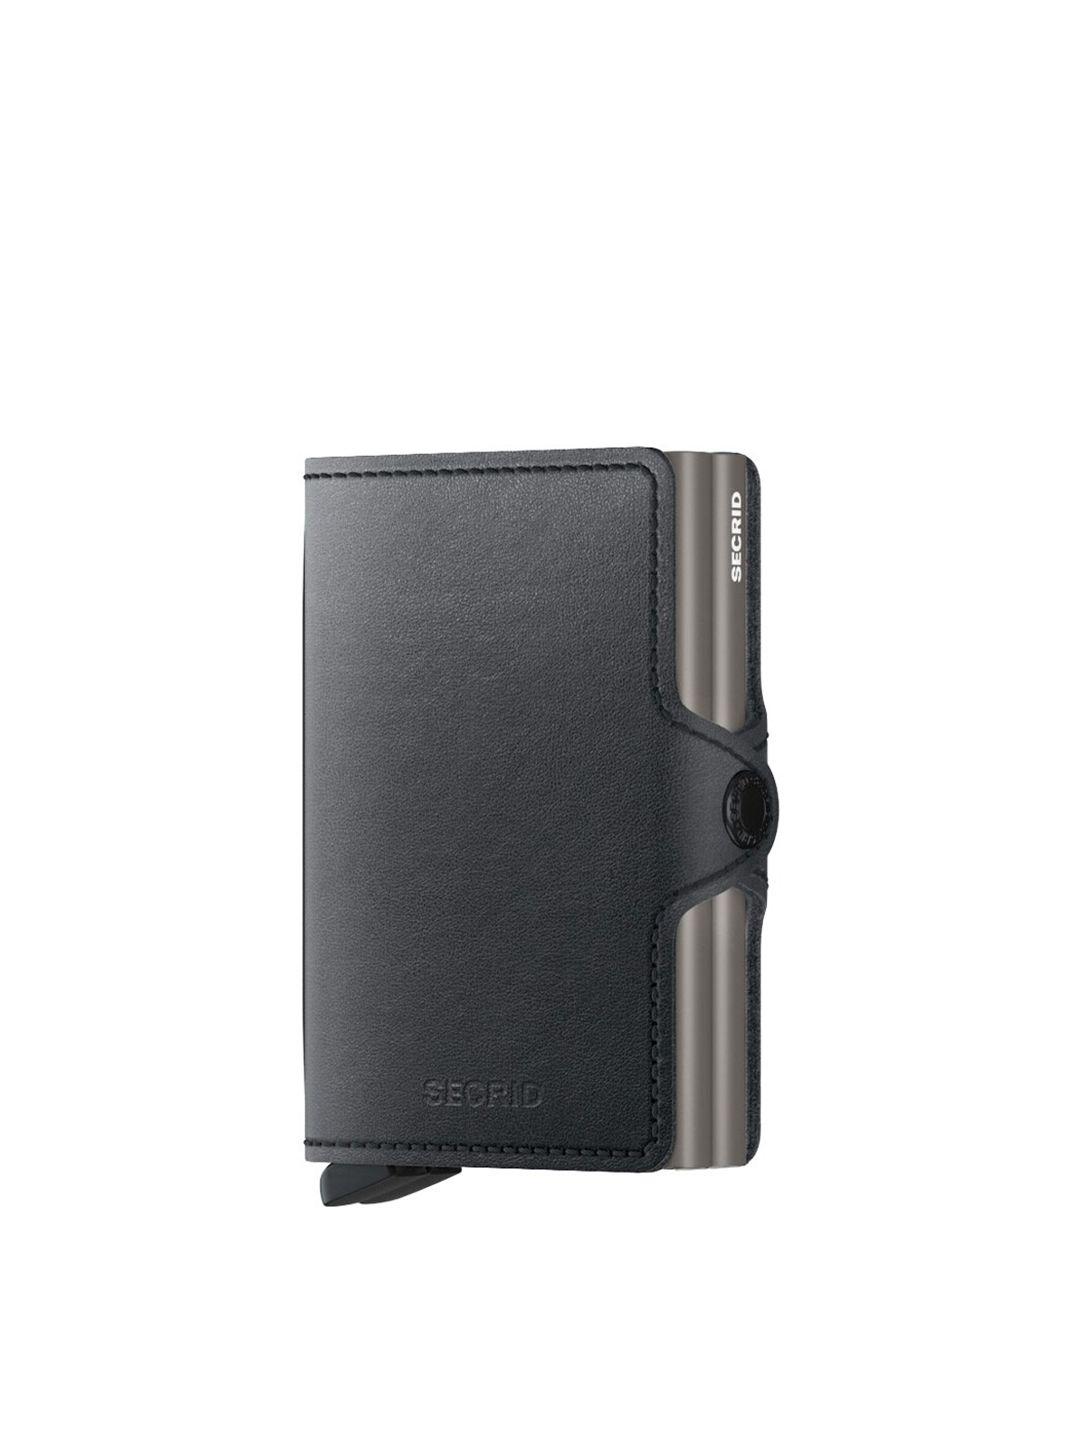 secrid leather card holder  wallet